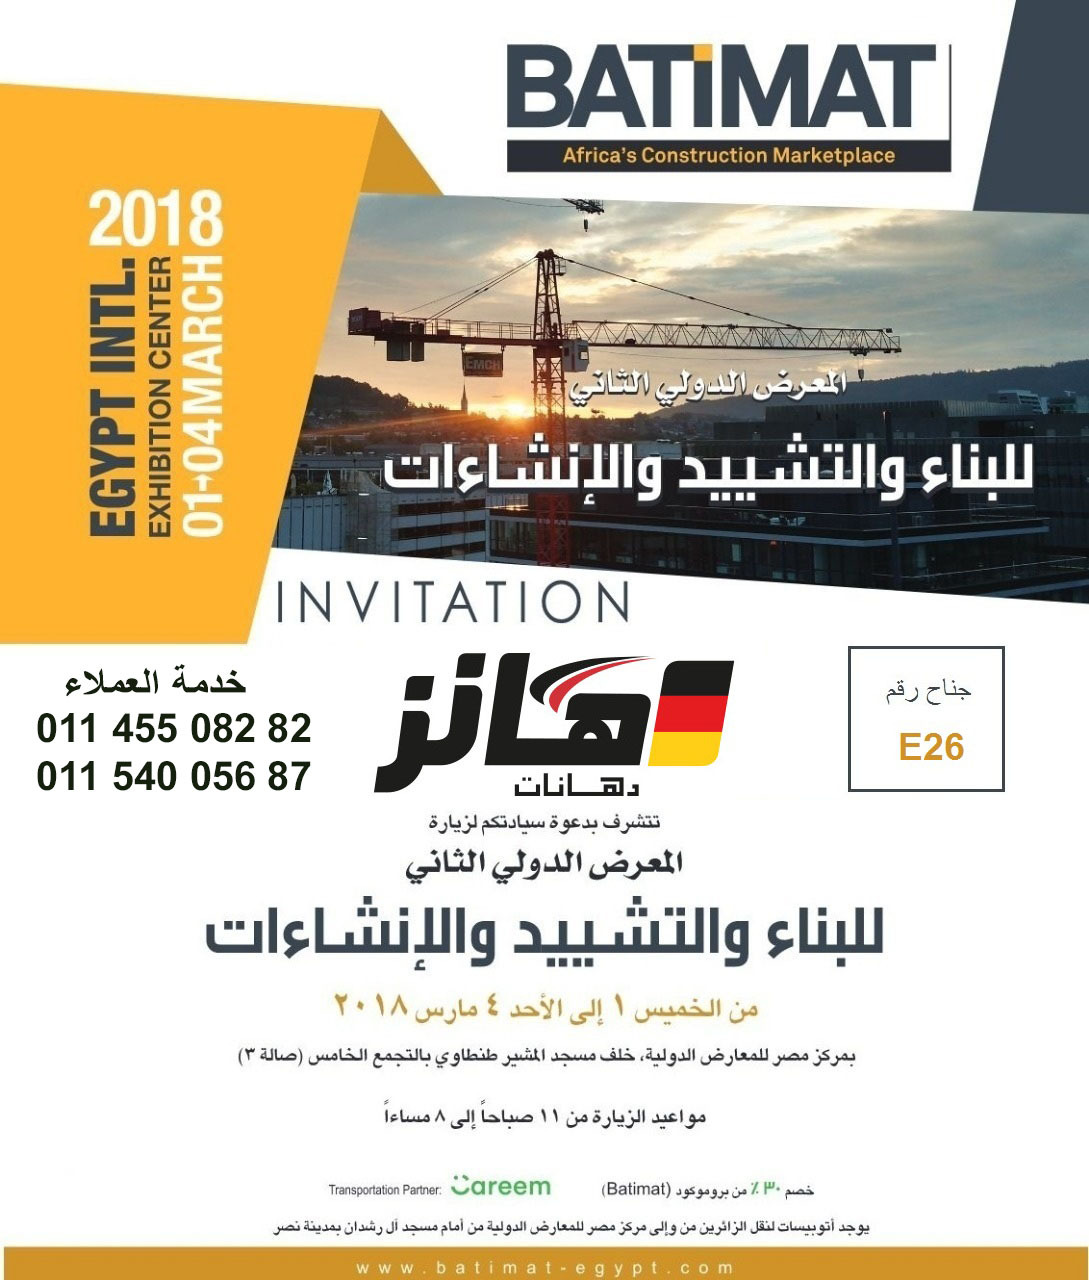 BATIMAT International Fair 2018